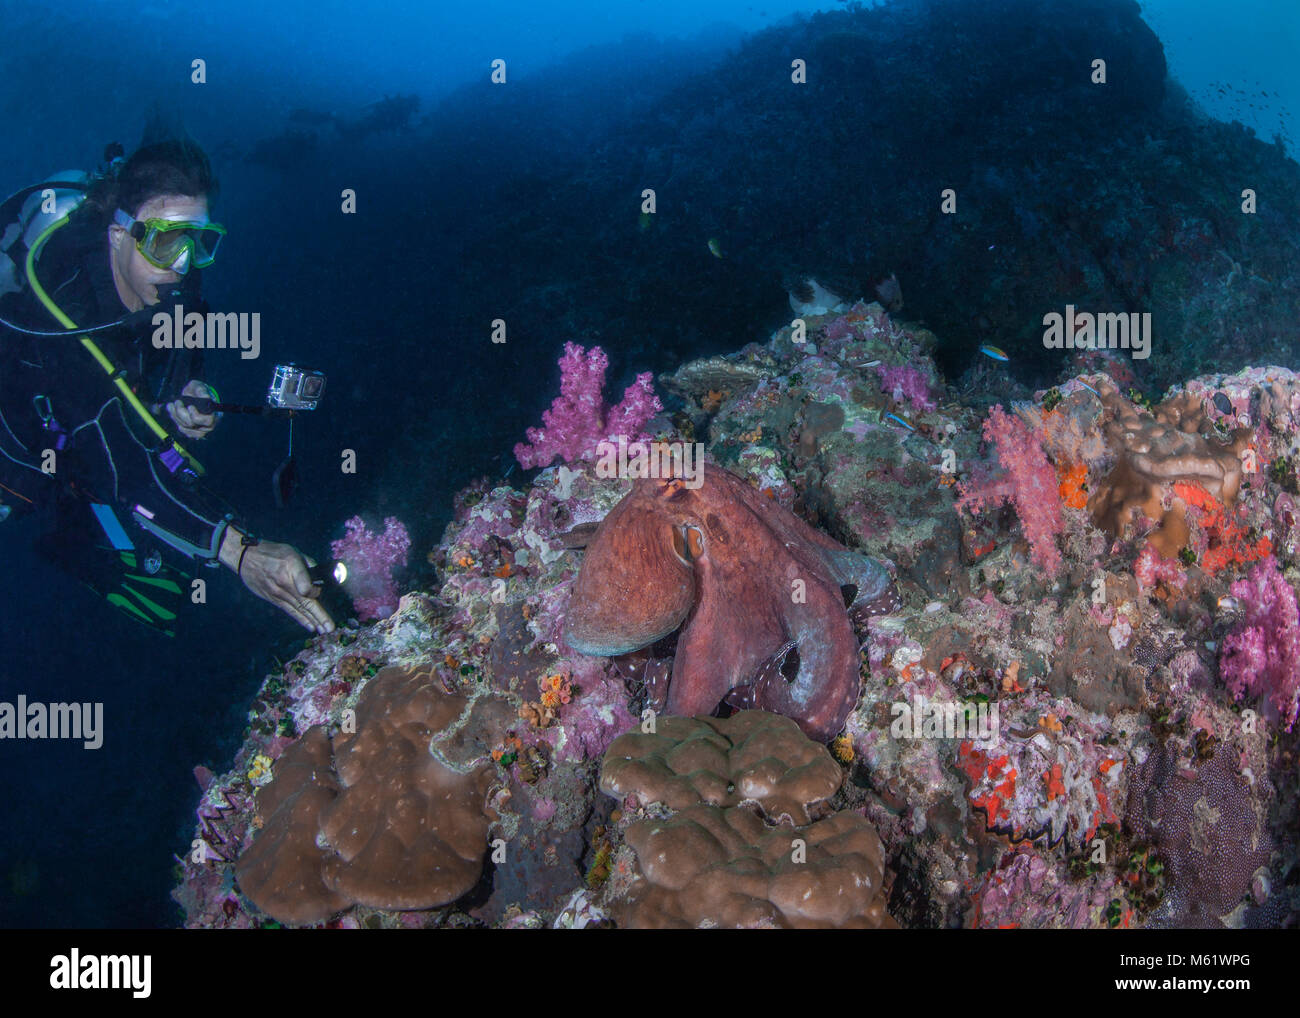 Plongeur femelle vidéo grand poulpe exposées sur la détérioration de la barrière de corail. Richelieu Rock, la mer d'Andaman, en Thaïlande. Décembre, 2017. Banque D'Images